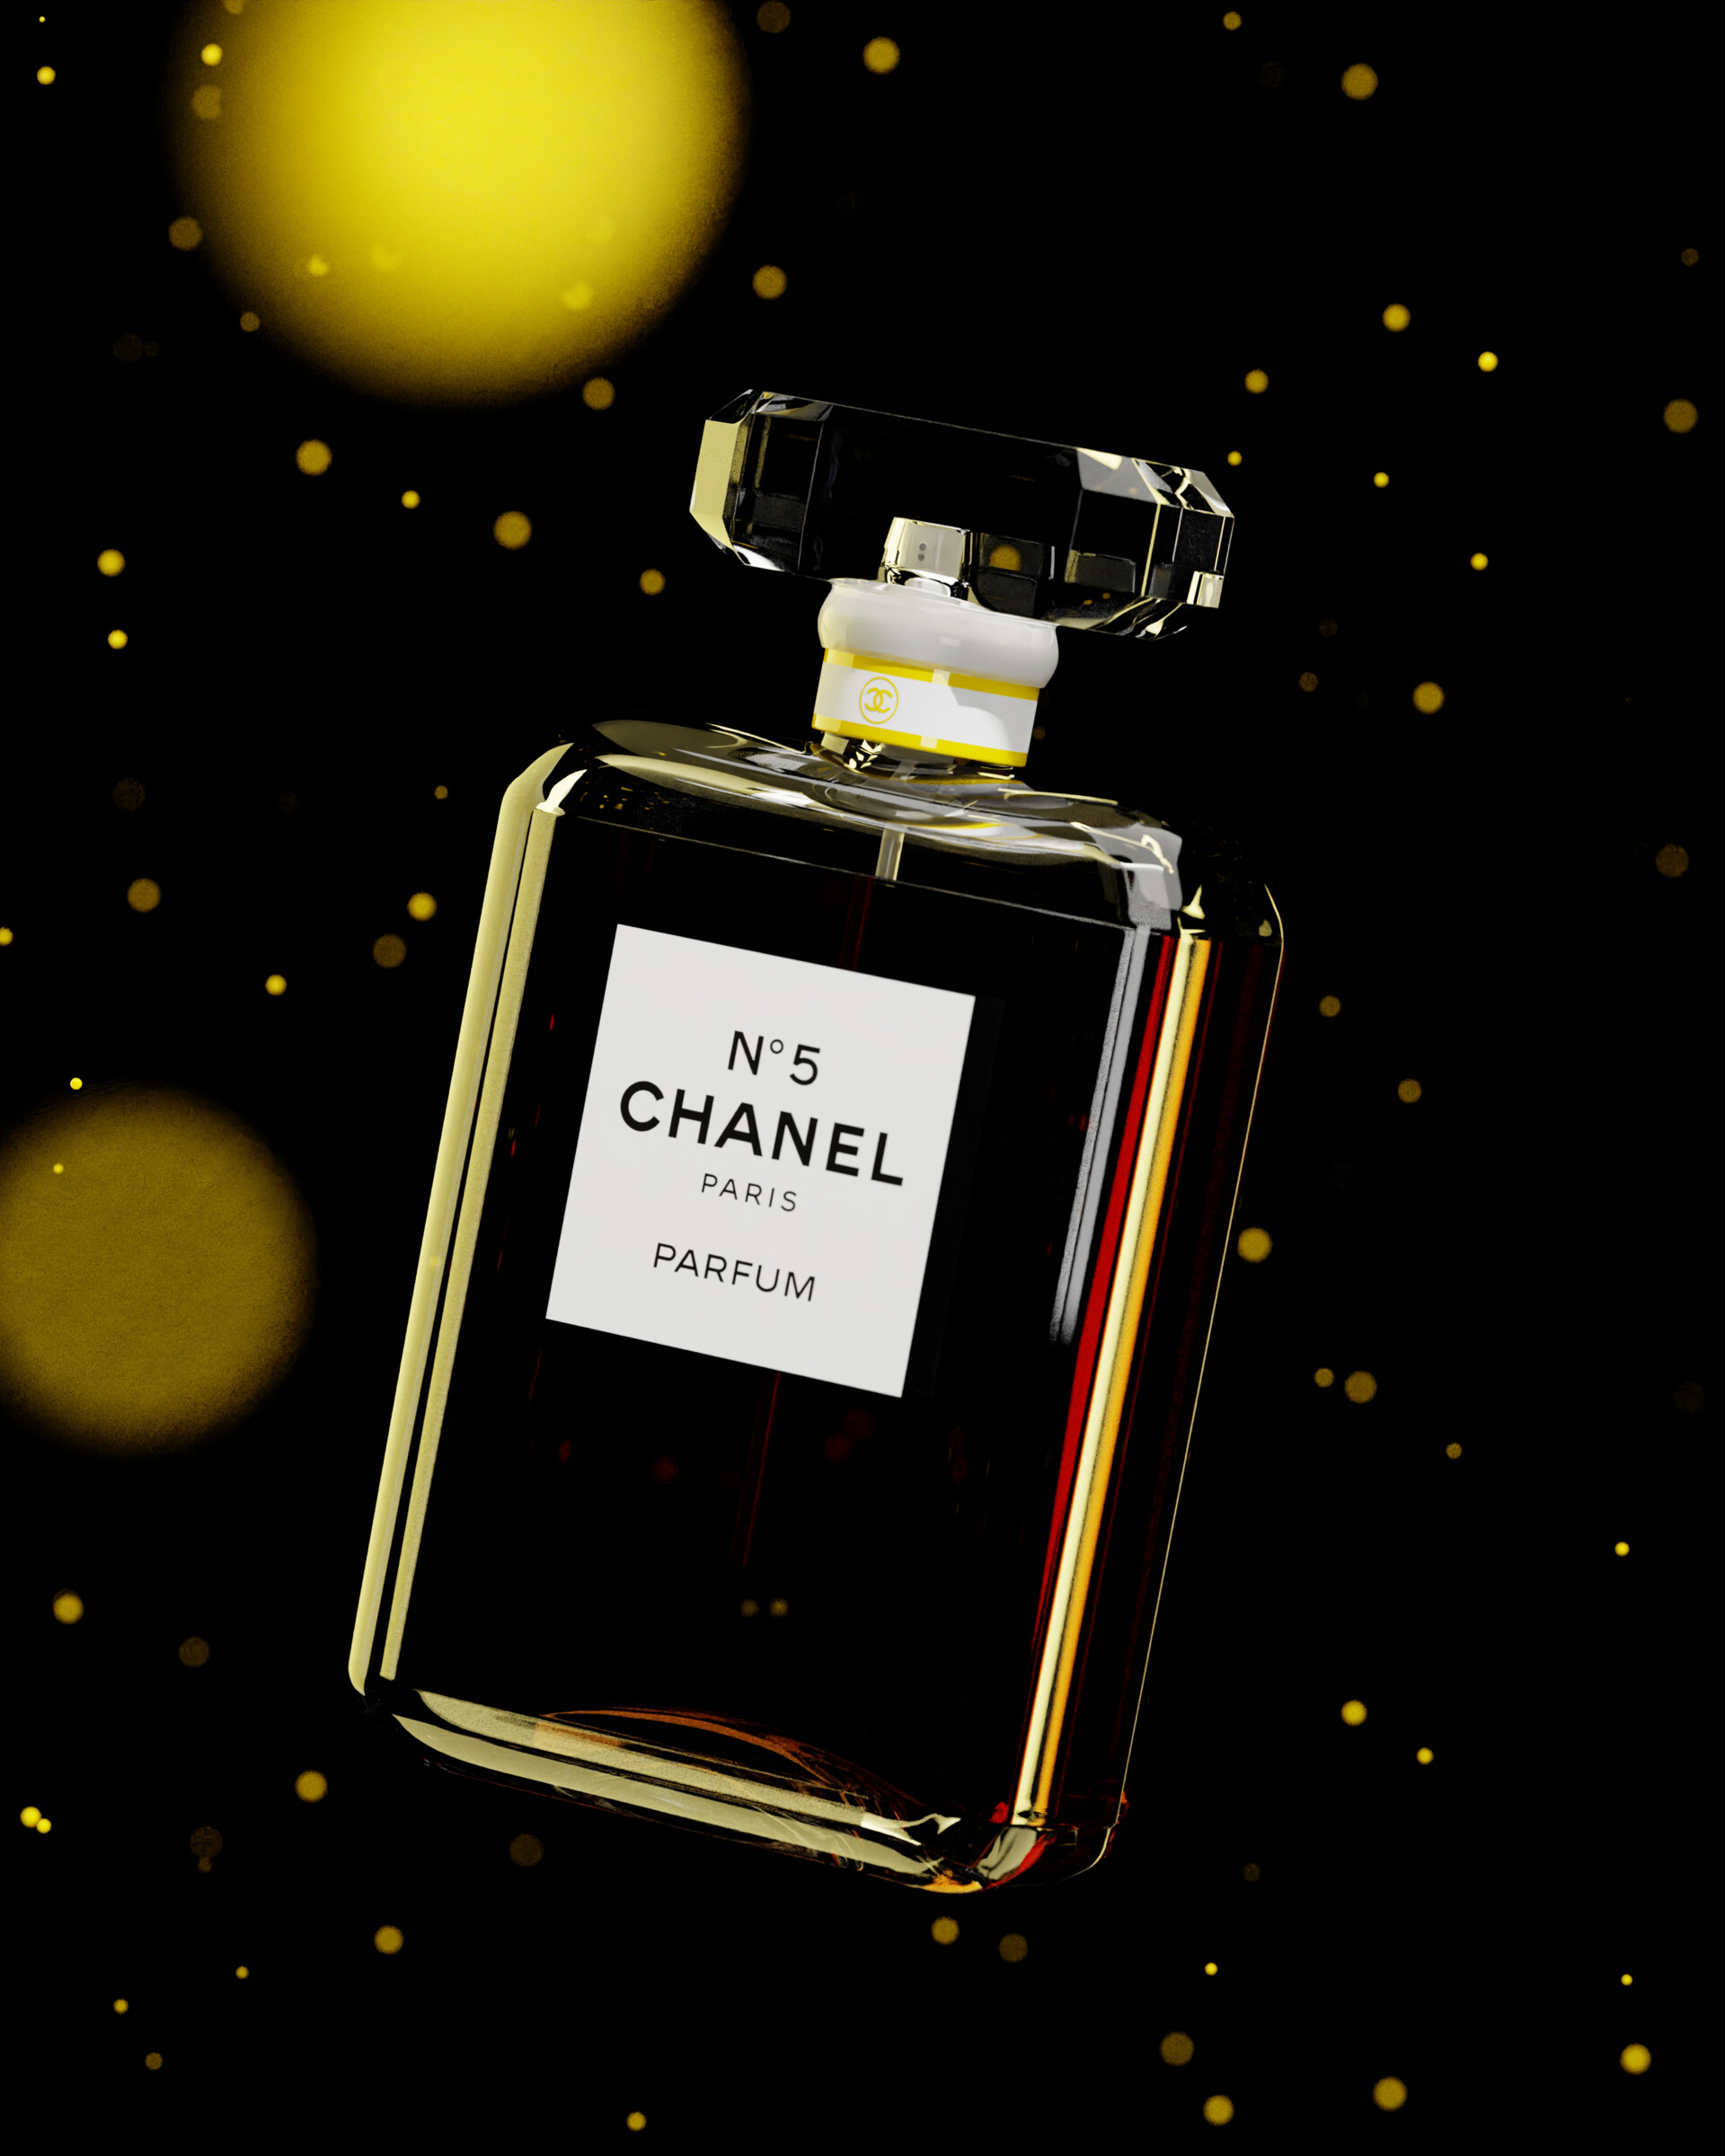 Jacob McCormack - Chanel Perfume Bottle